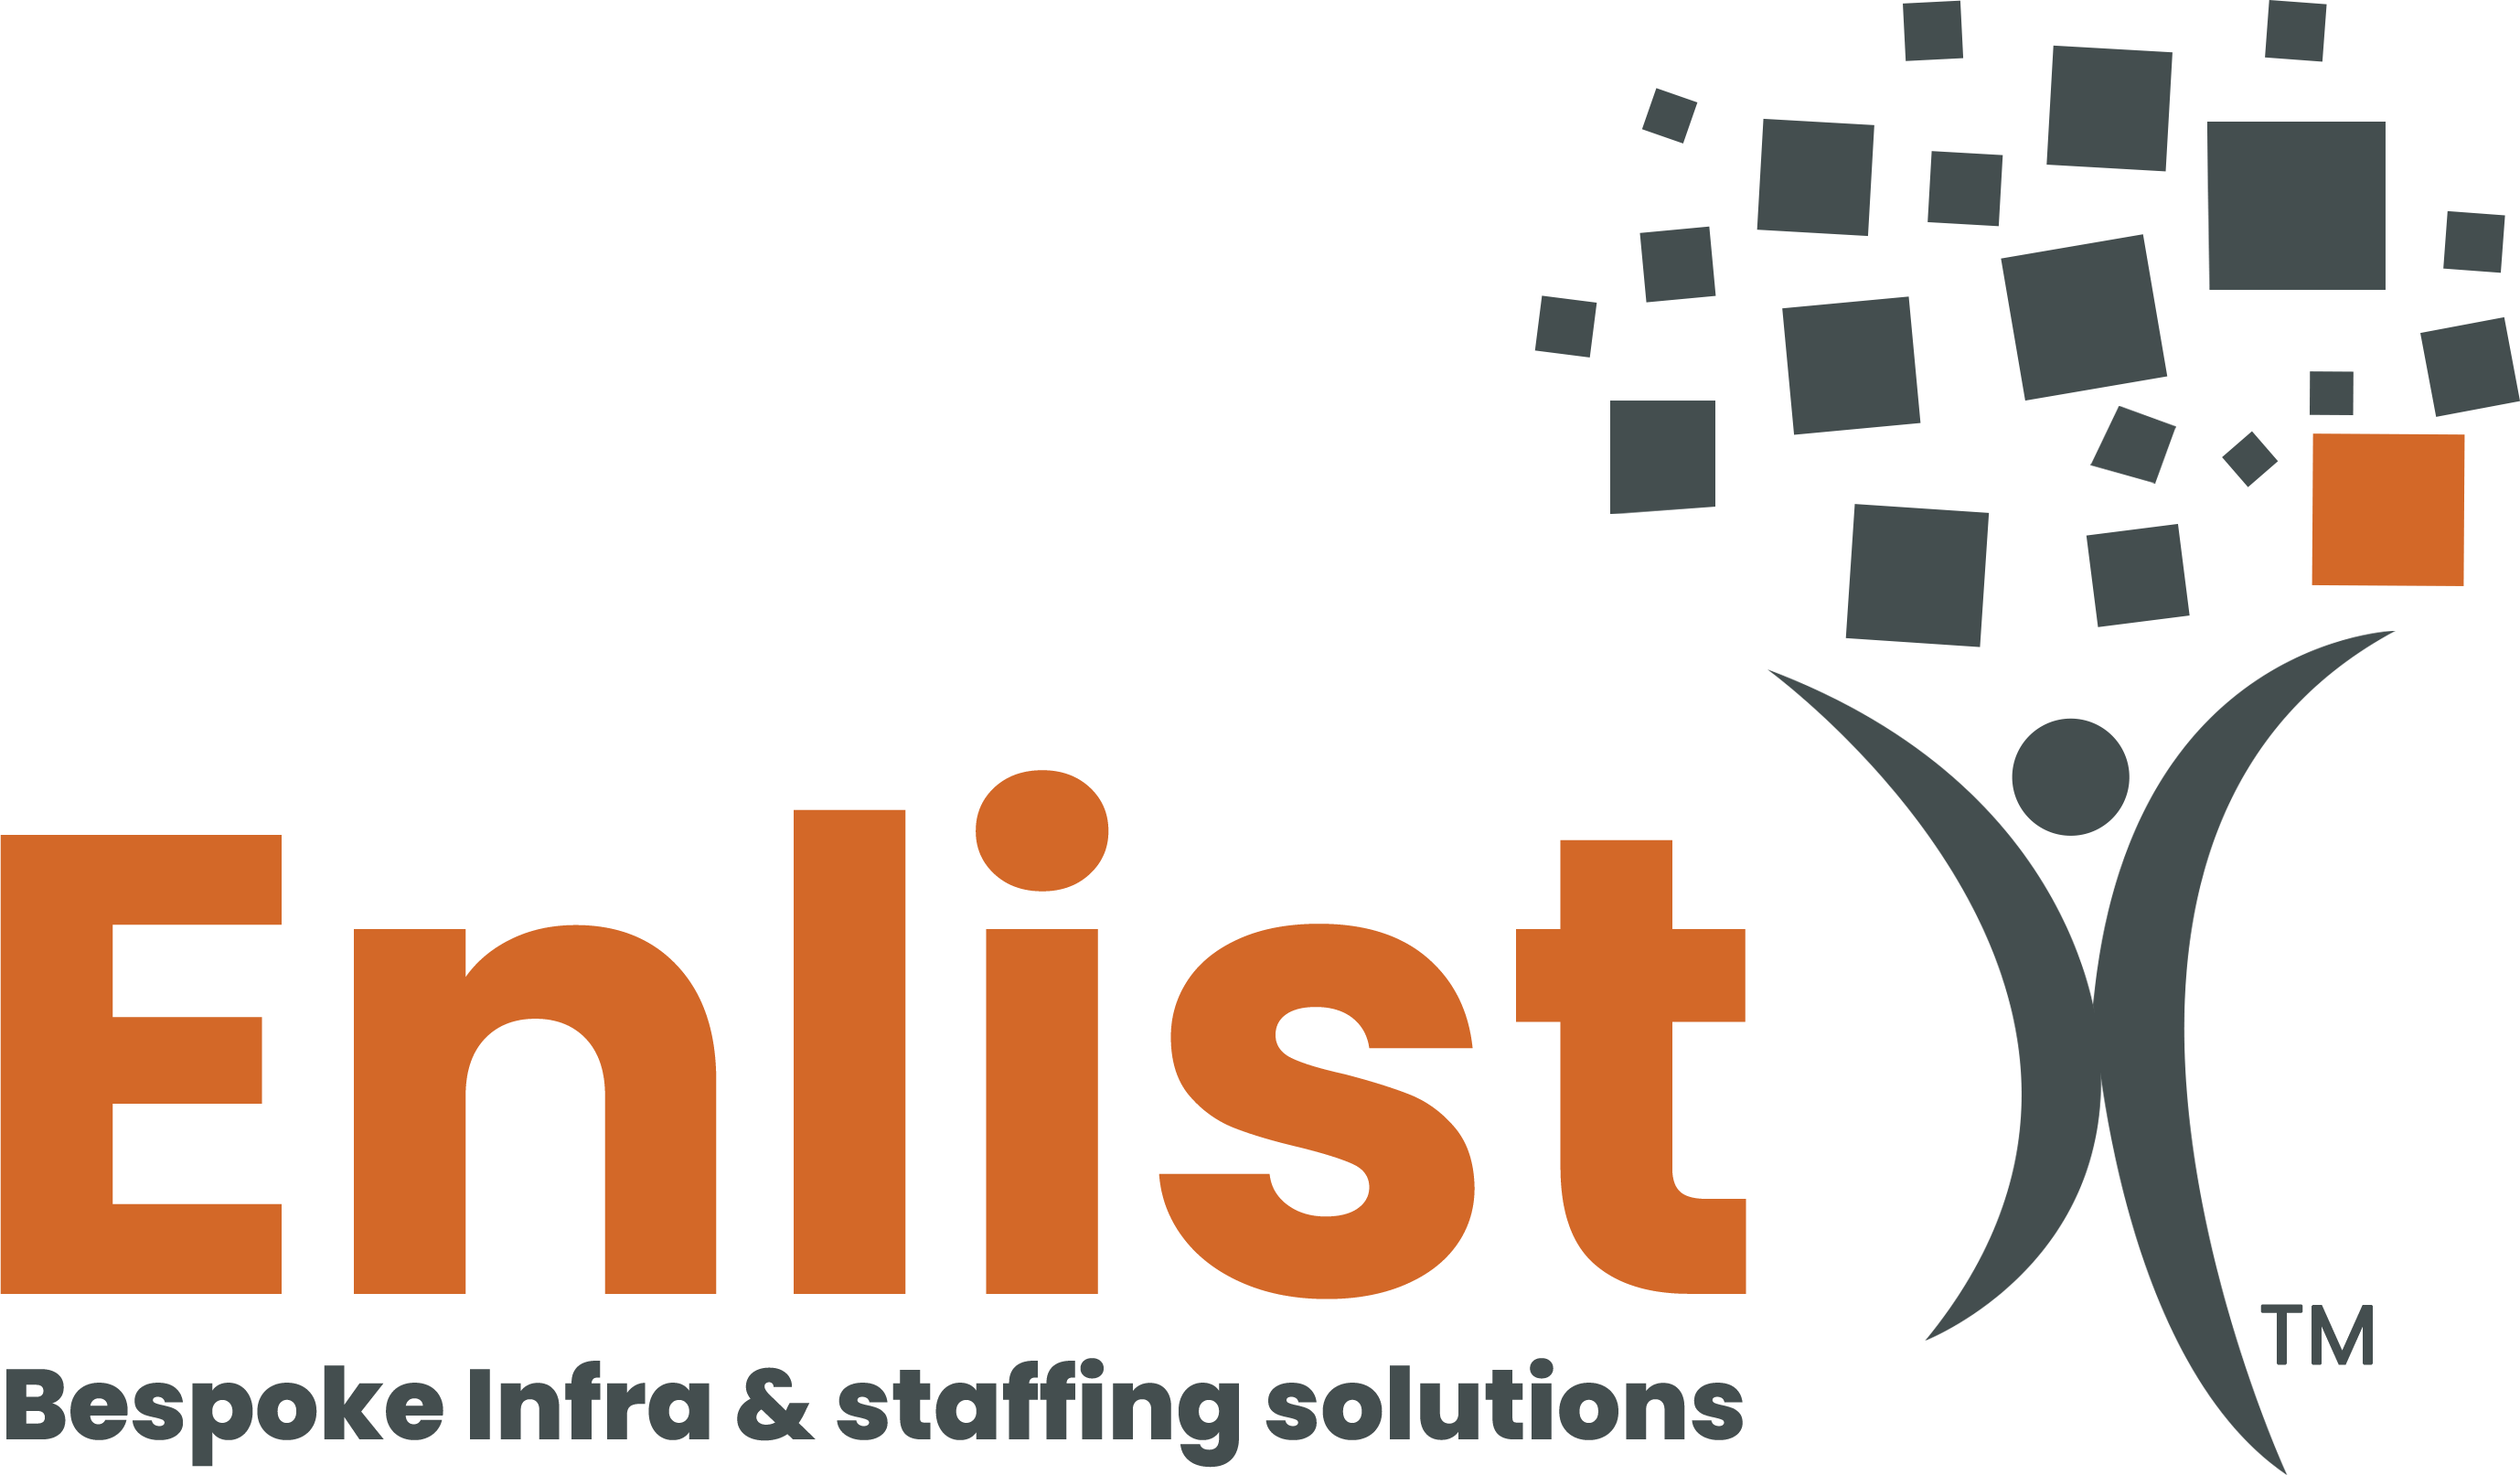 Enlist Management Consultants Pvt Ltd. logo